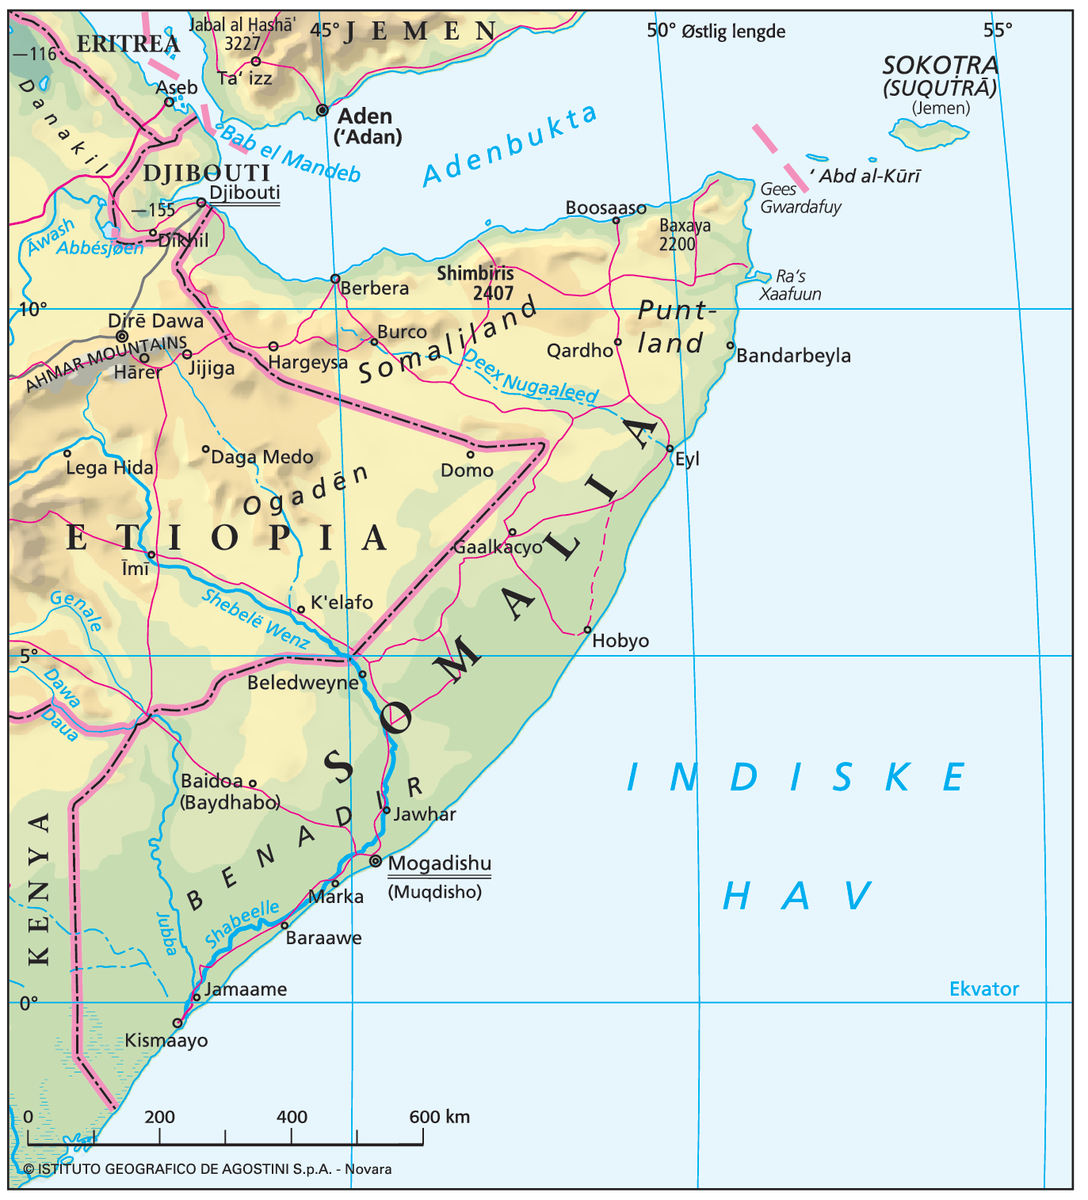 Somalia (Hovedkart)